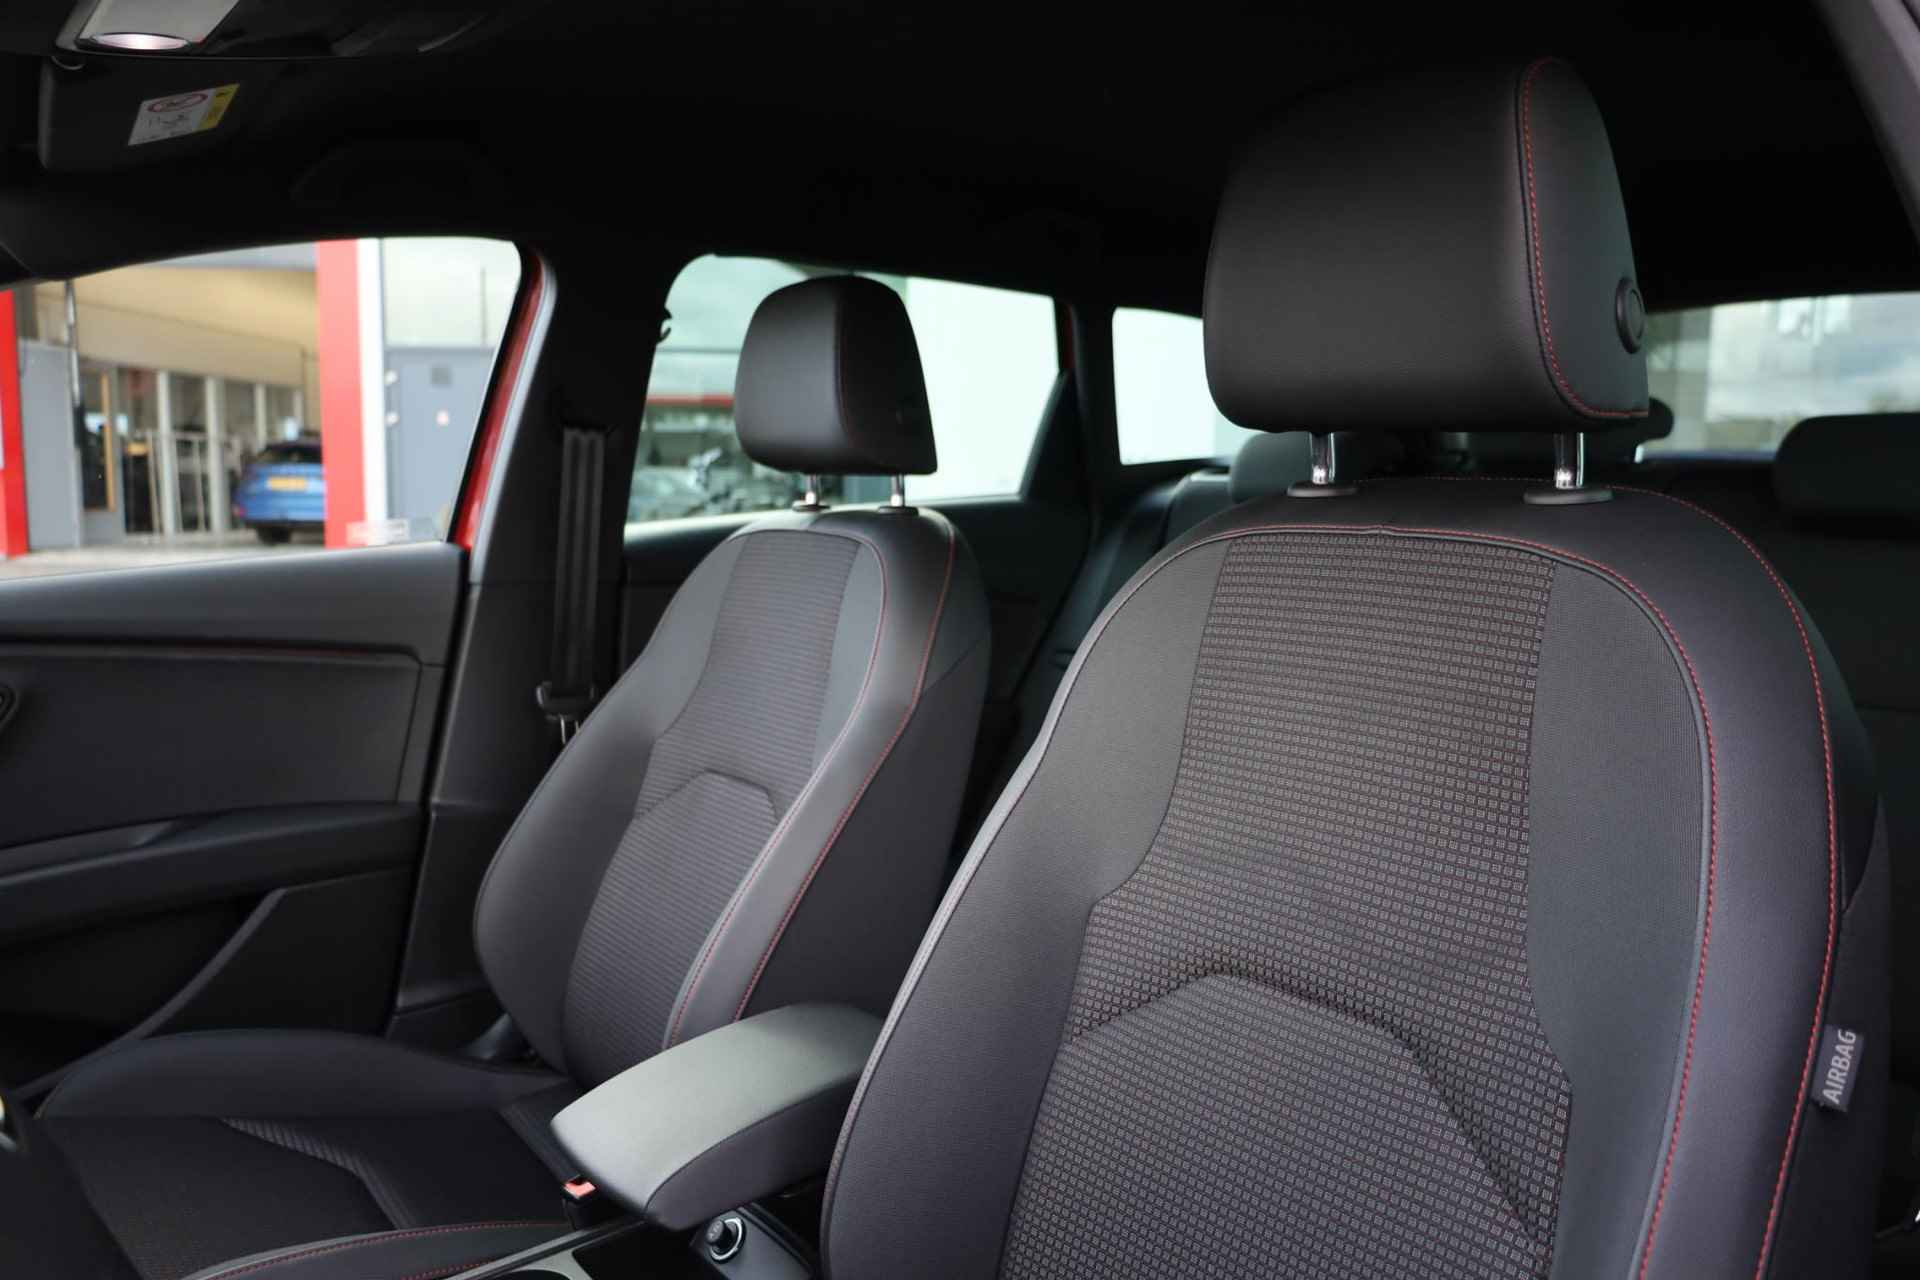 SEAT Leon ST 1.0 TSI FR Business Intense 115PK / 85kW, 17" LMV, achteruitrijcamera, stoelverwarming, navigatie, pdc voor en achter, NL auto door ons geleverd en onderhouden - 12/46